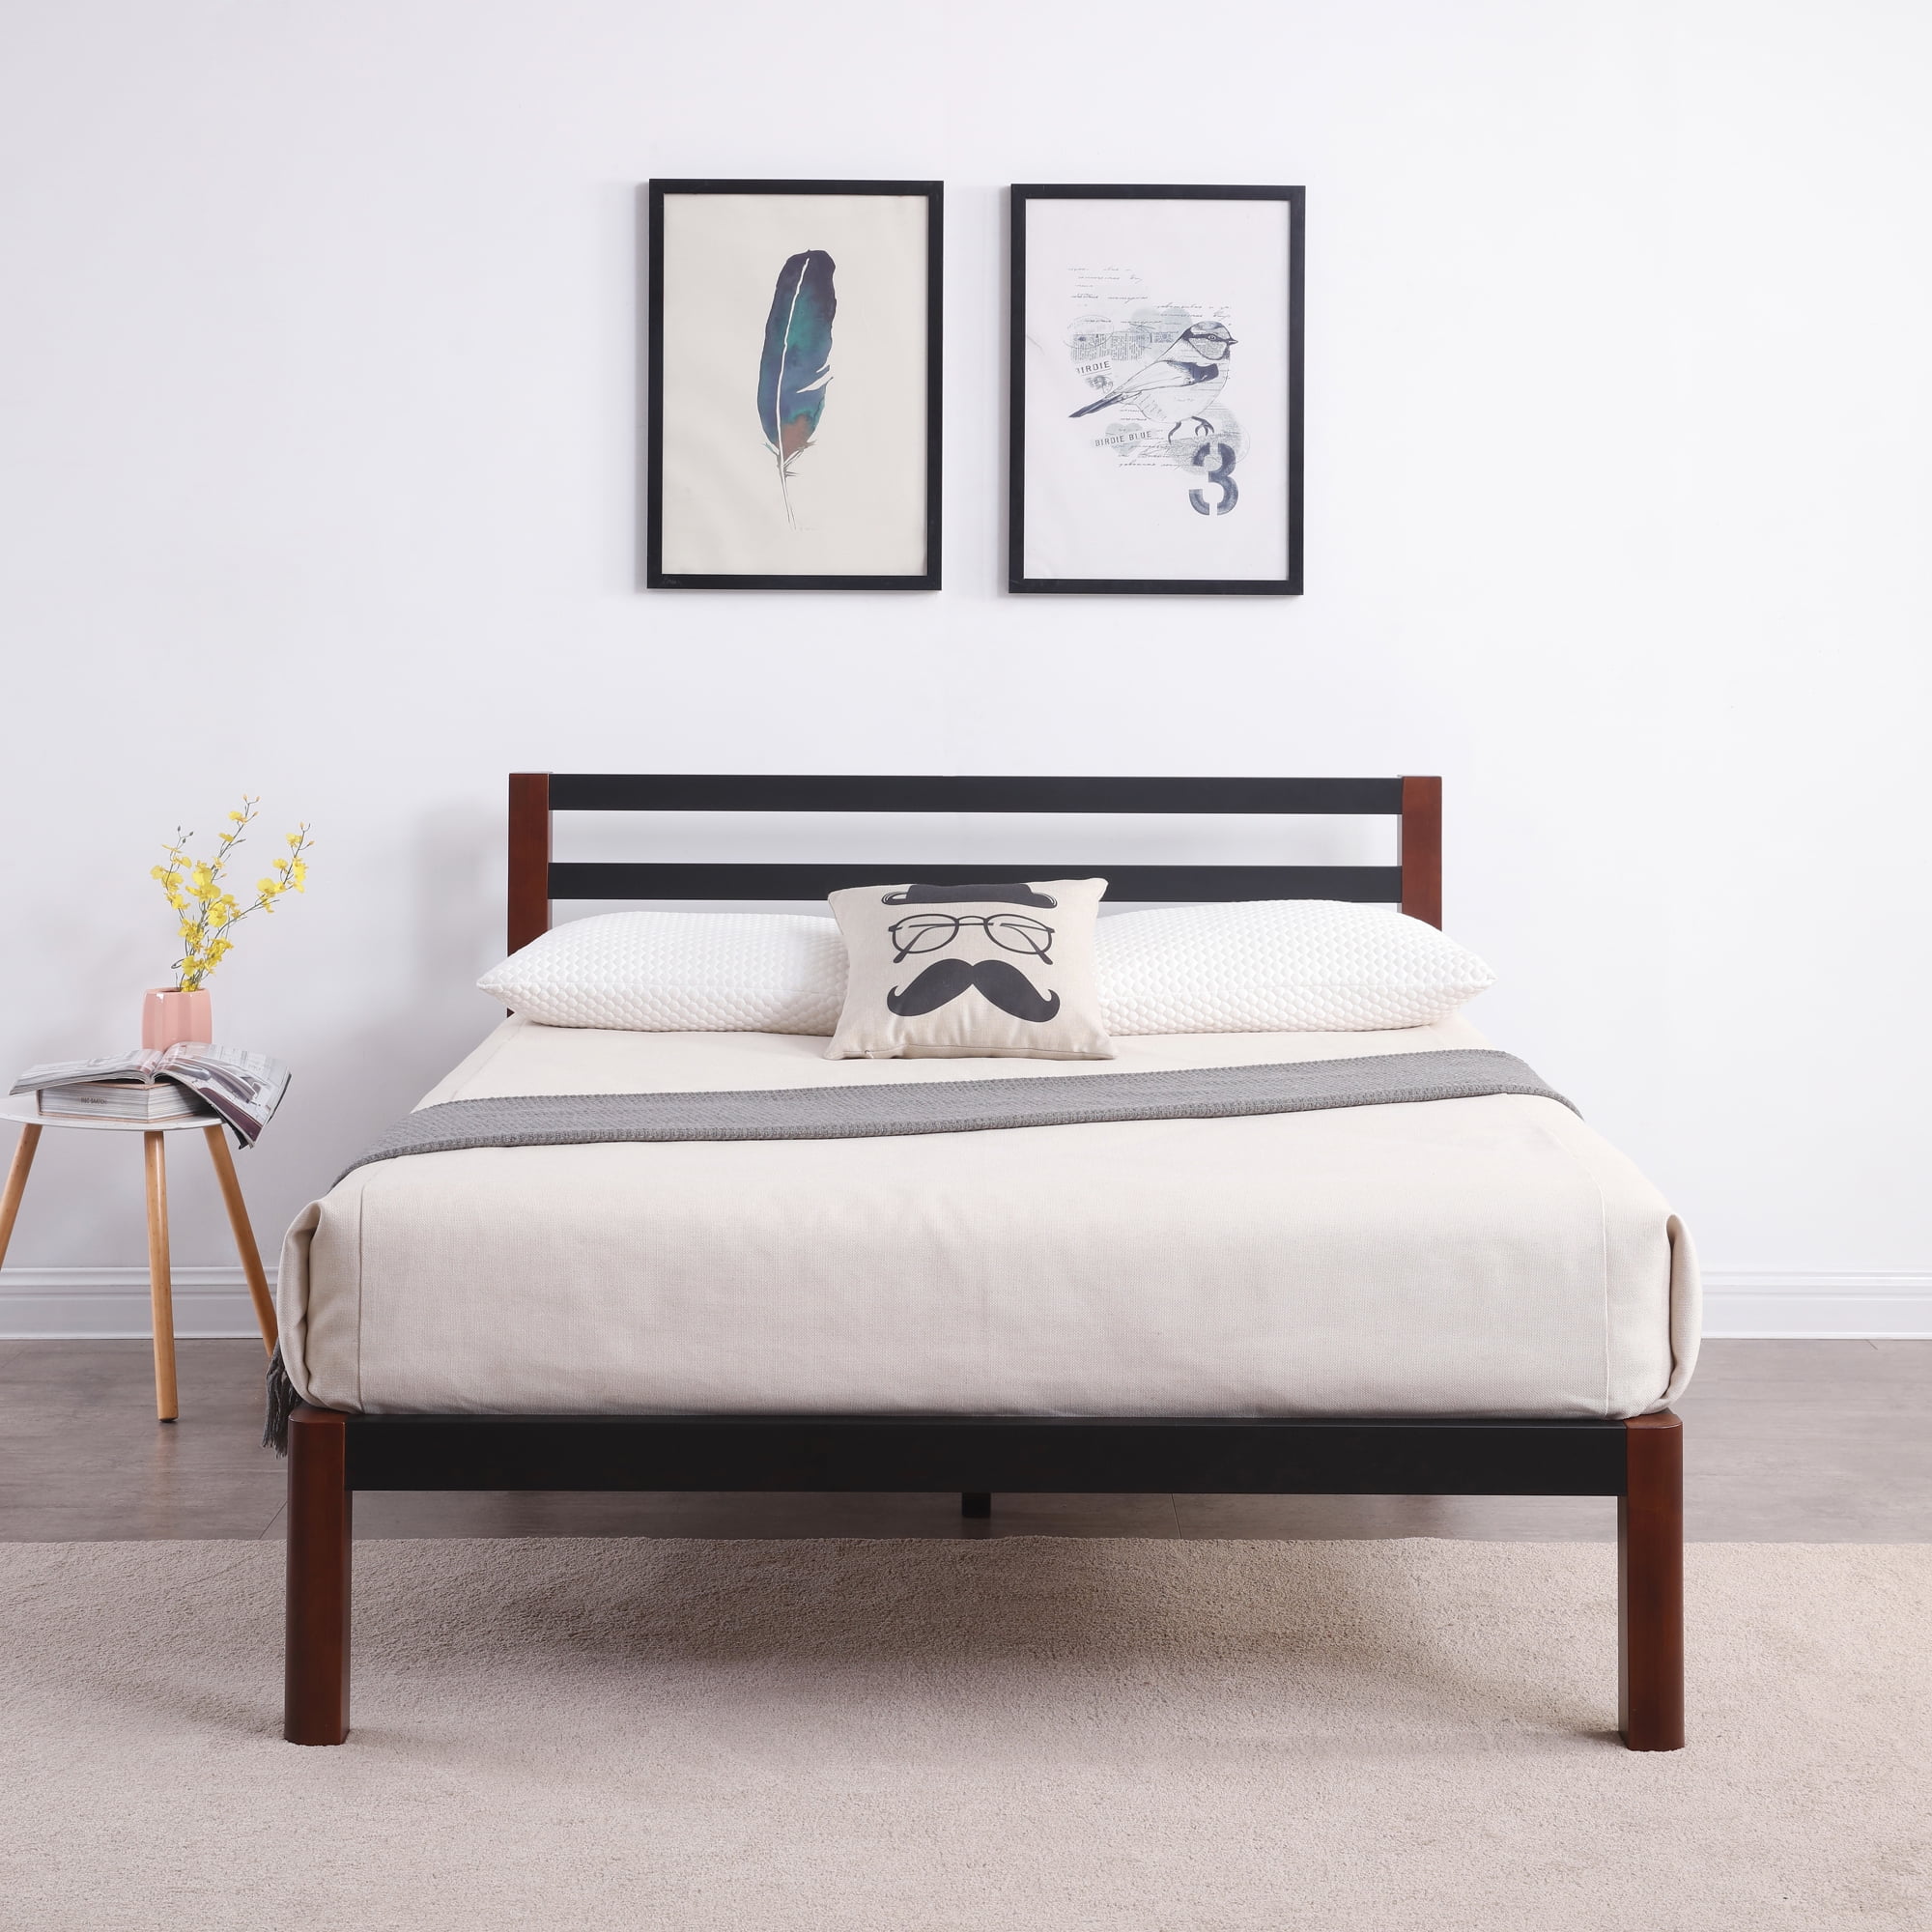 Deluxe Wood Platform Bed With Headboard, Zinus Vivek 37 Deluxe Wood Platform Bed Frame With Headboard Queen